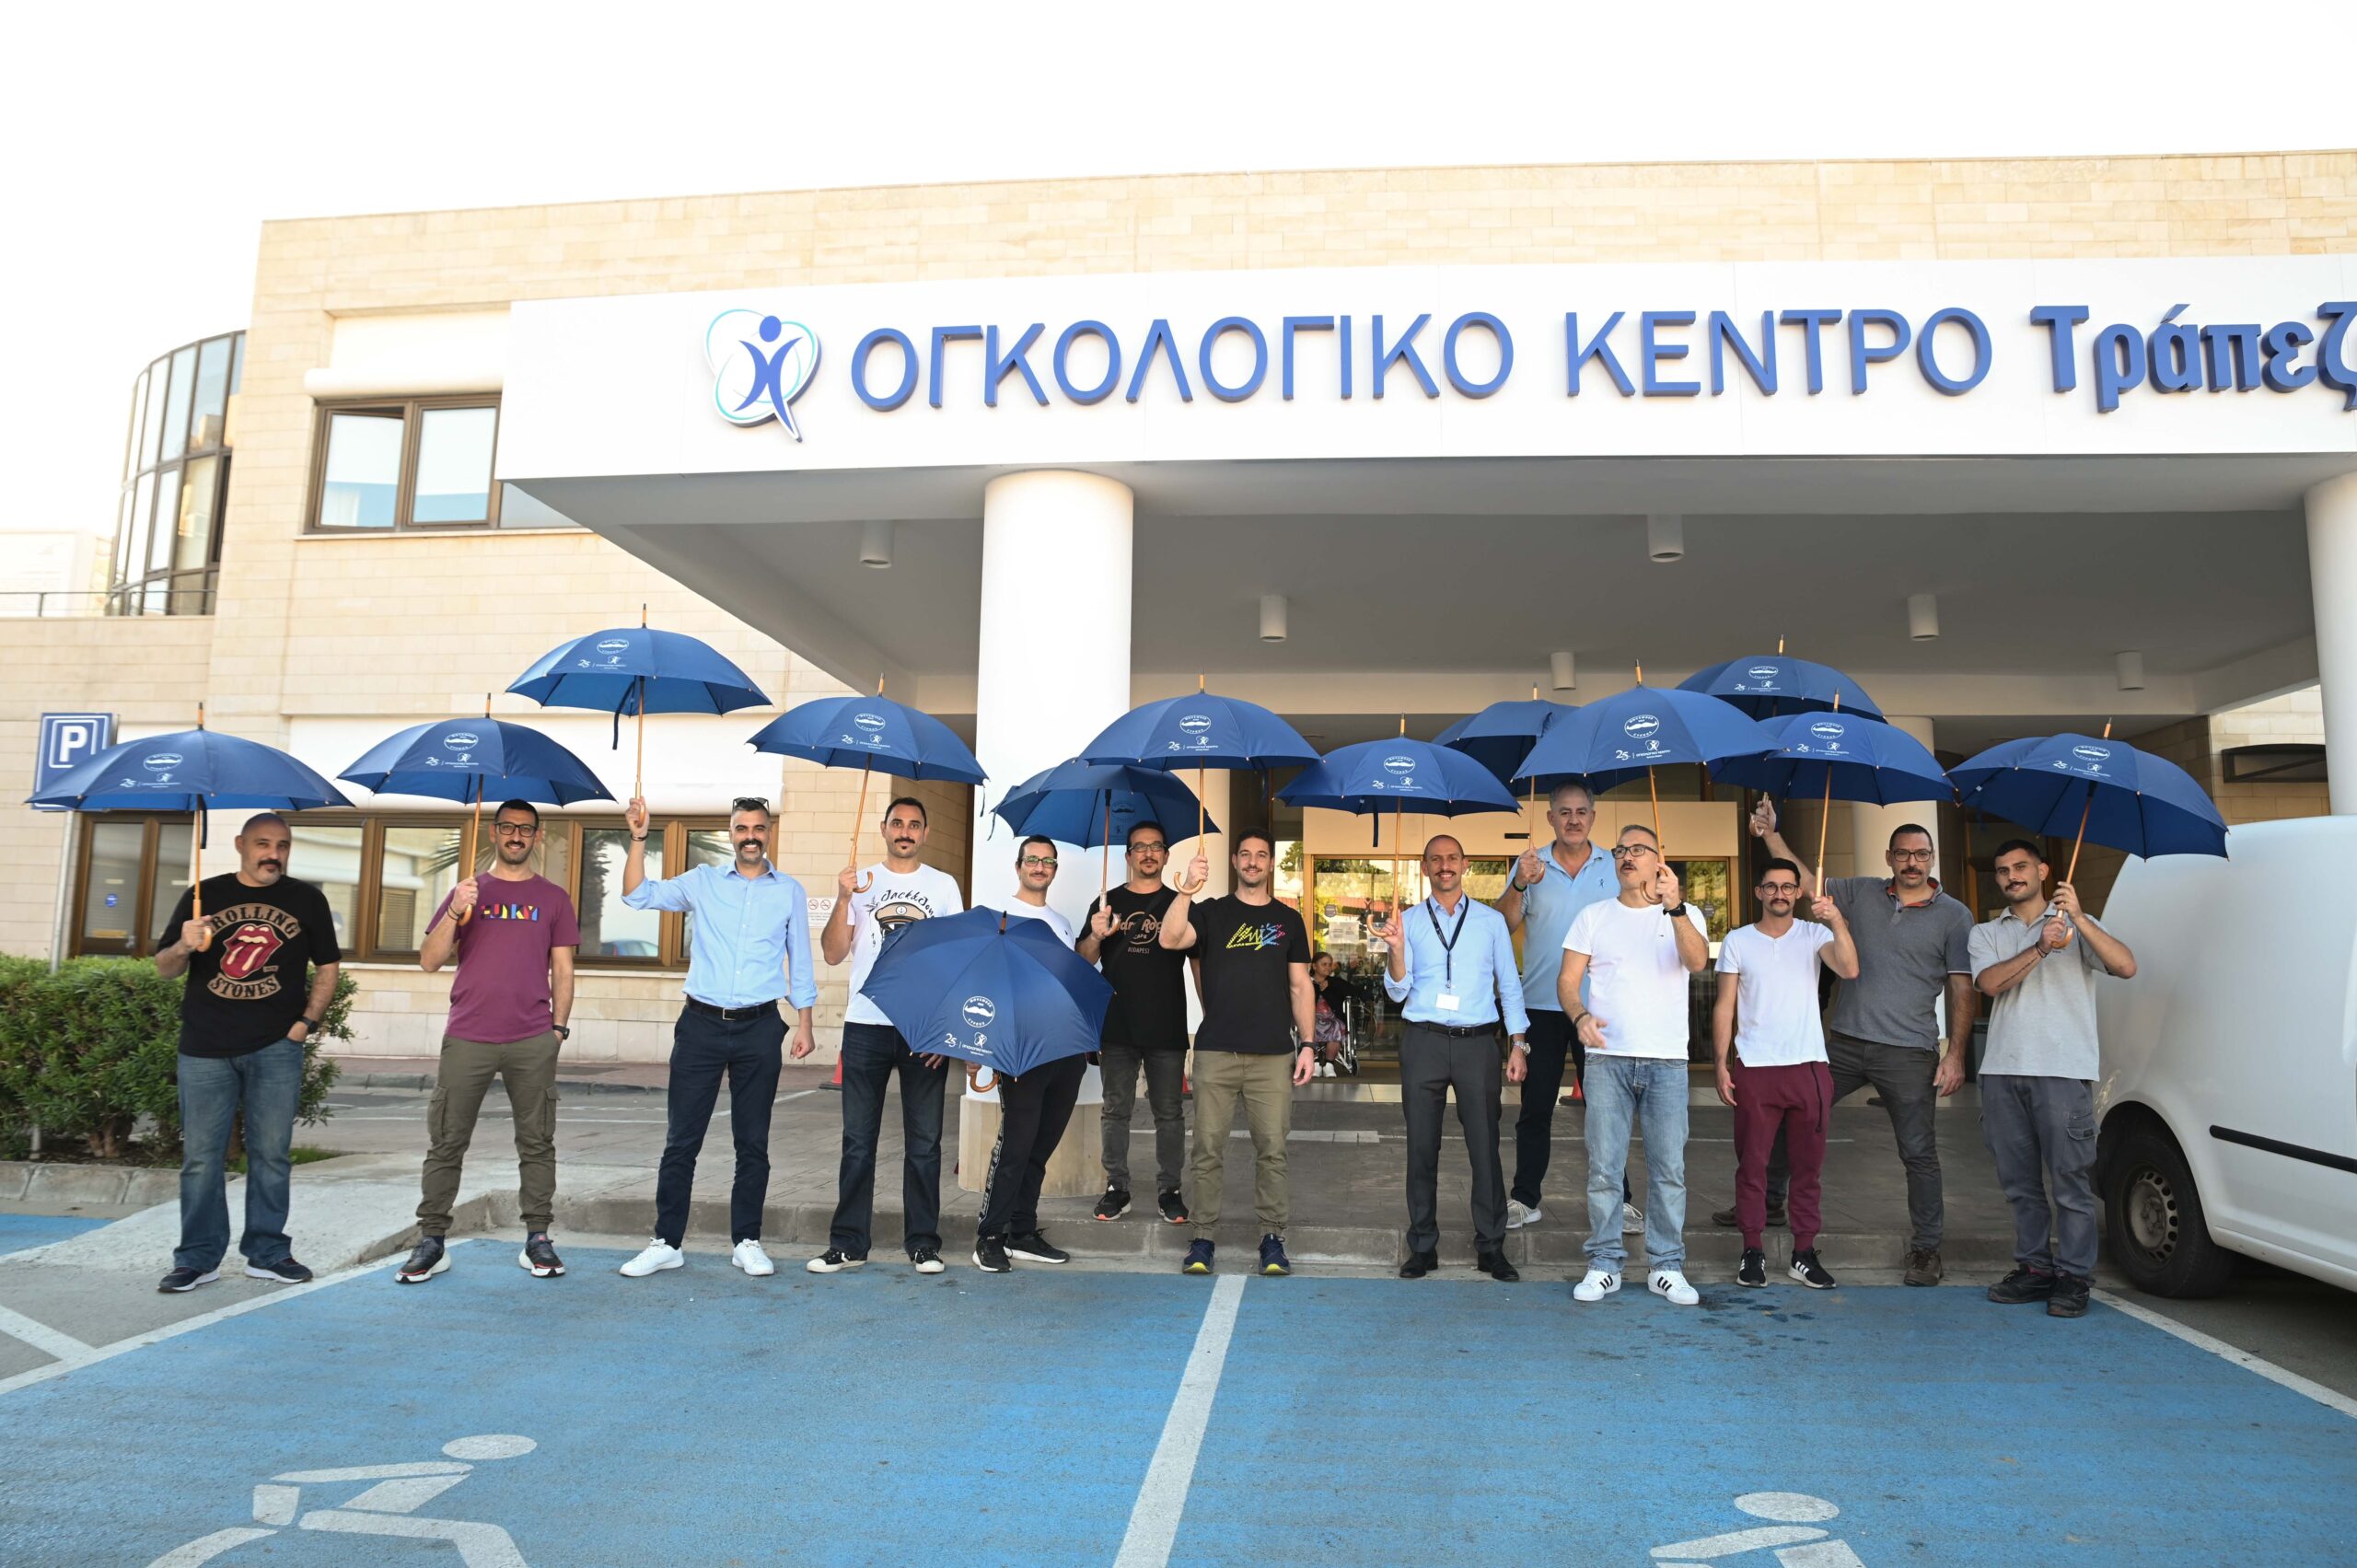 Το Ογκολογικό Κέντρο Τράπεζας Κύπρου συμμετέχει στην εκστρατεία Movember